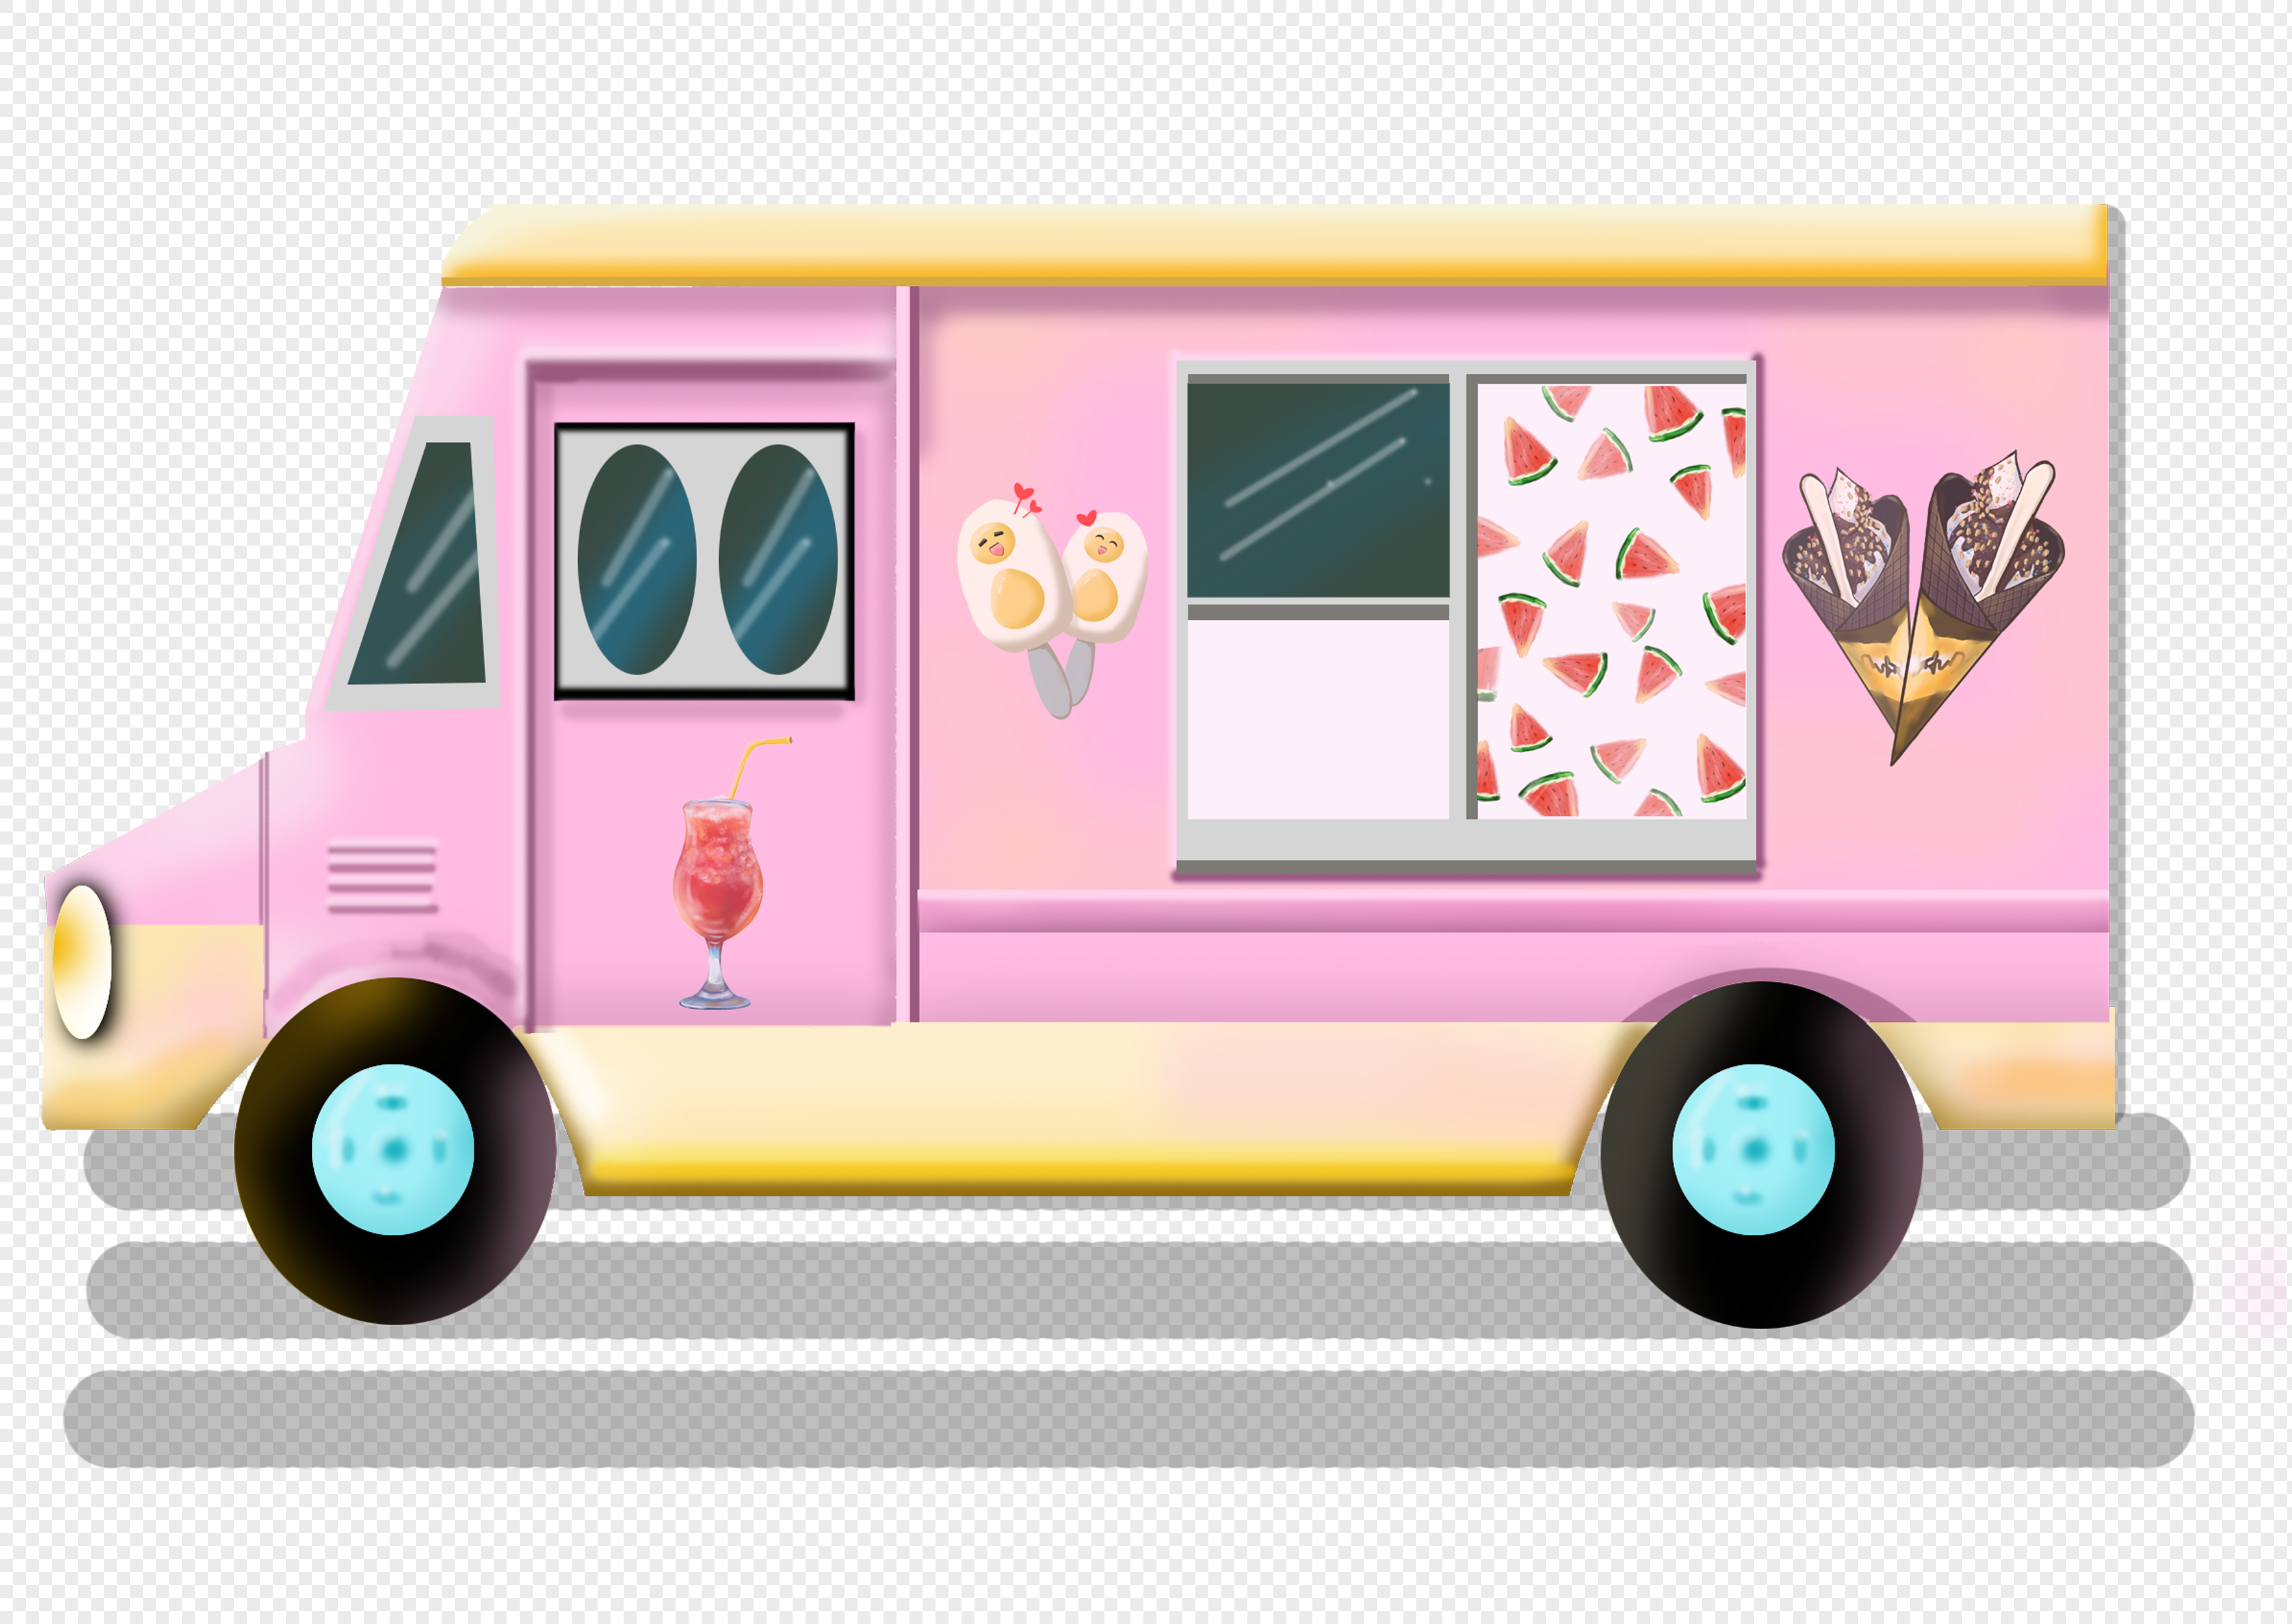 грузовик мороженого мультфильм PNG изображения с прозрачным фоном ...